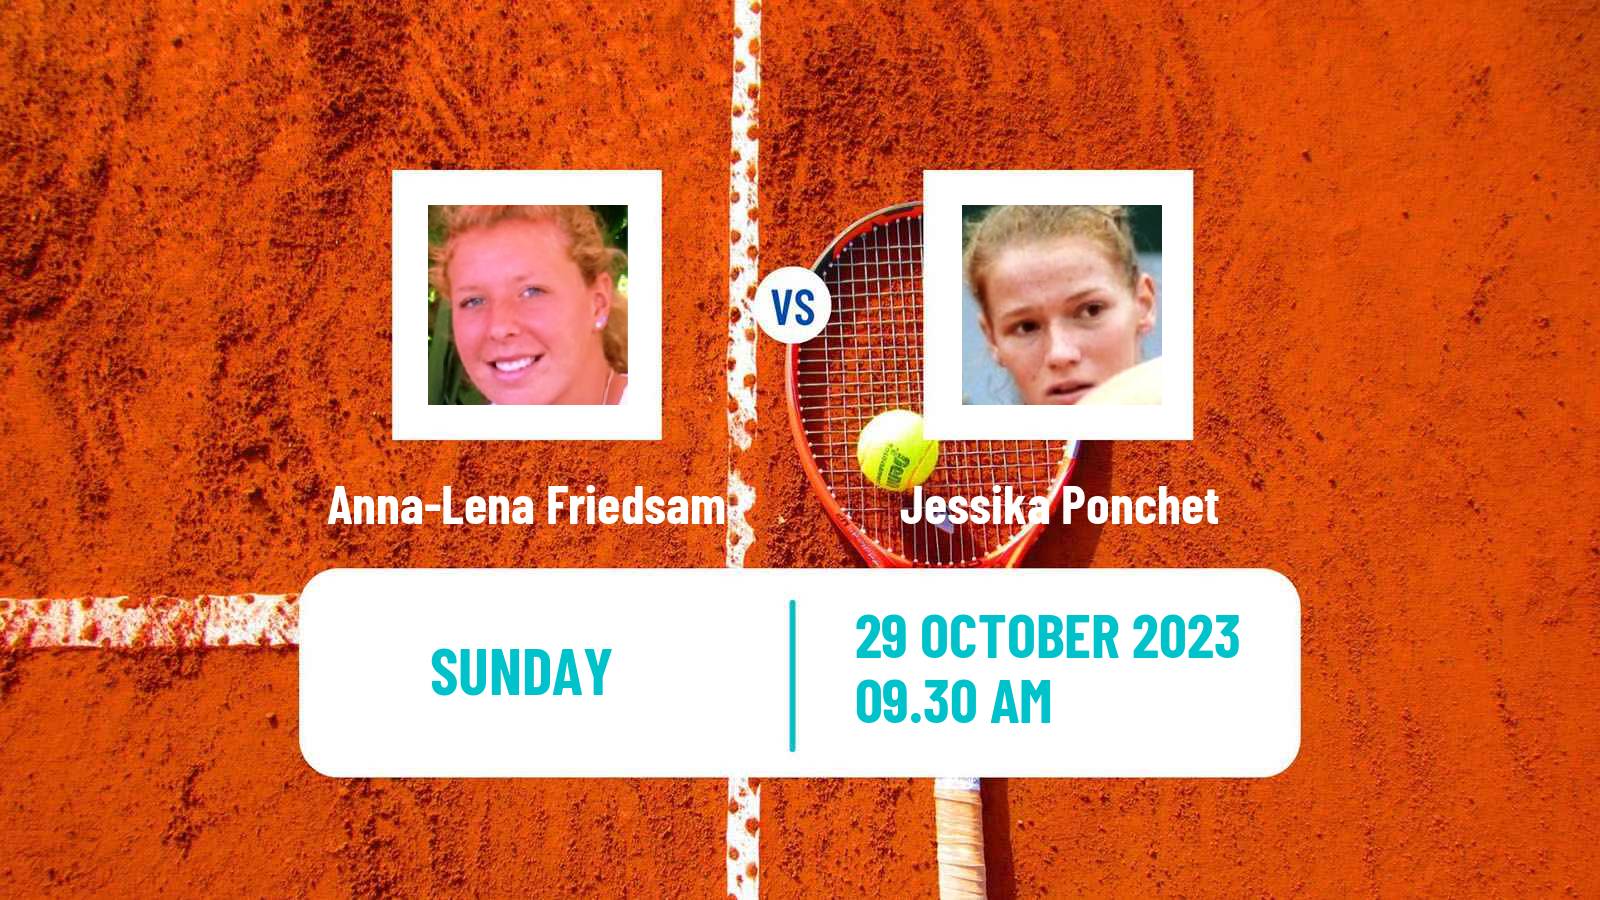 Tennis ITF W80 Poitiers Women Anna-Lena Friedsam - Jessika Ponchet